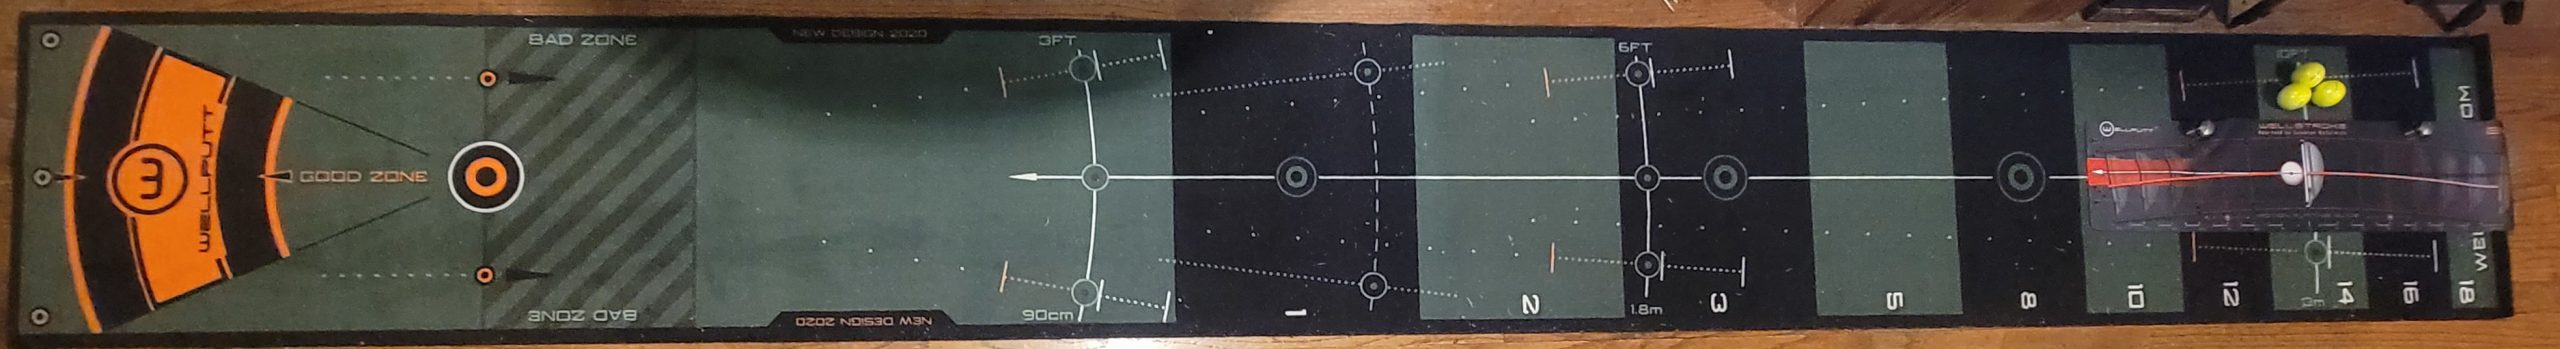 Old Duffer Golf image of the Wellstroke mat on the Wellputt mat 